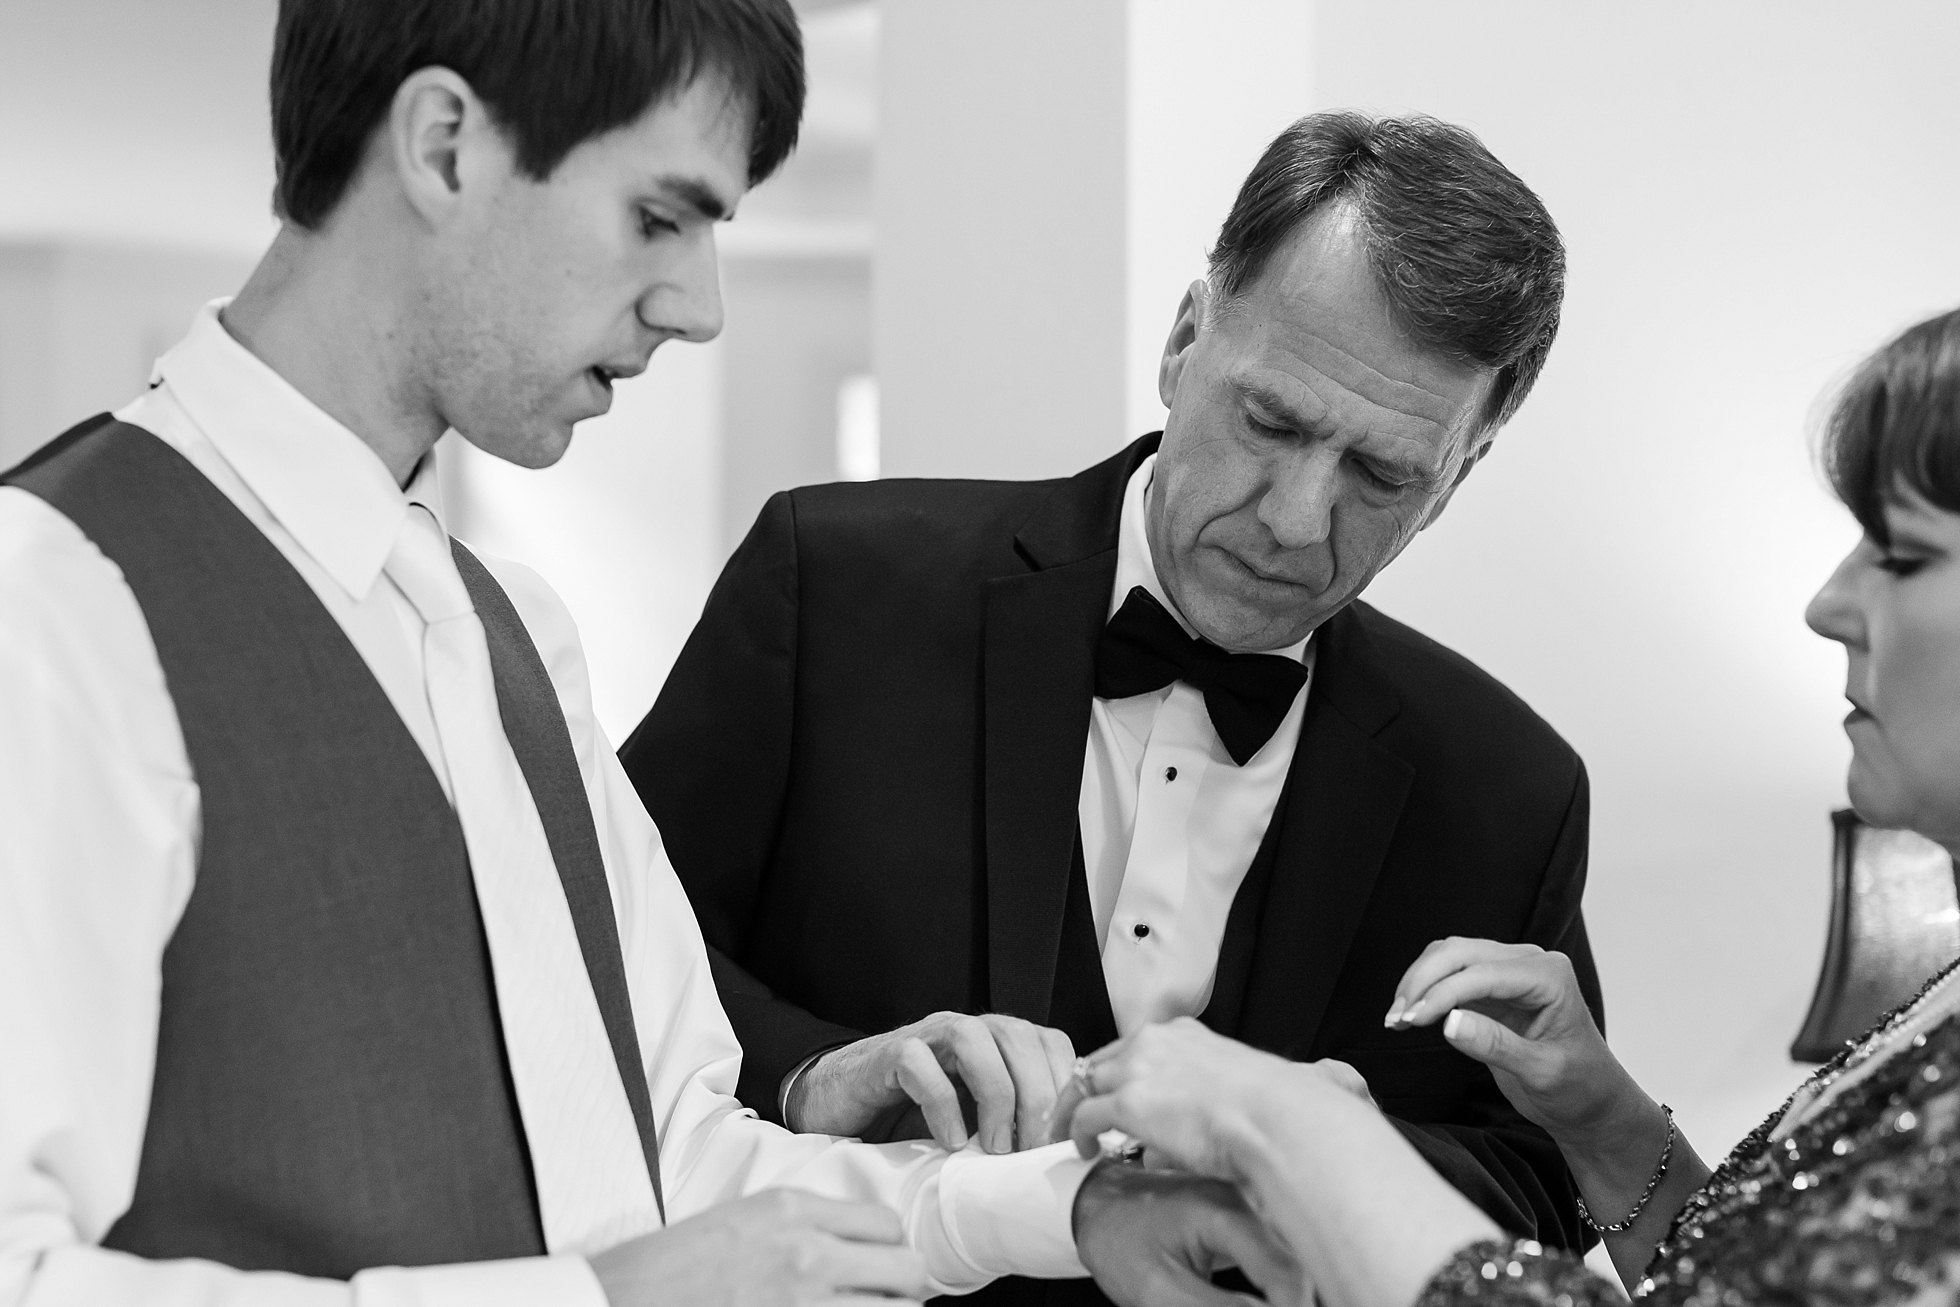 groom getting ready wedding